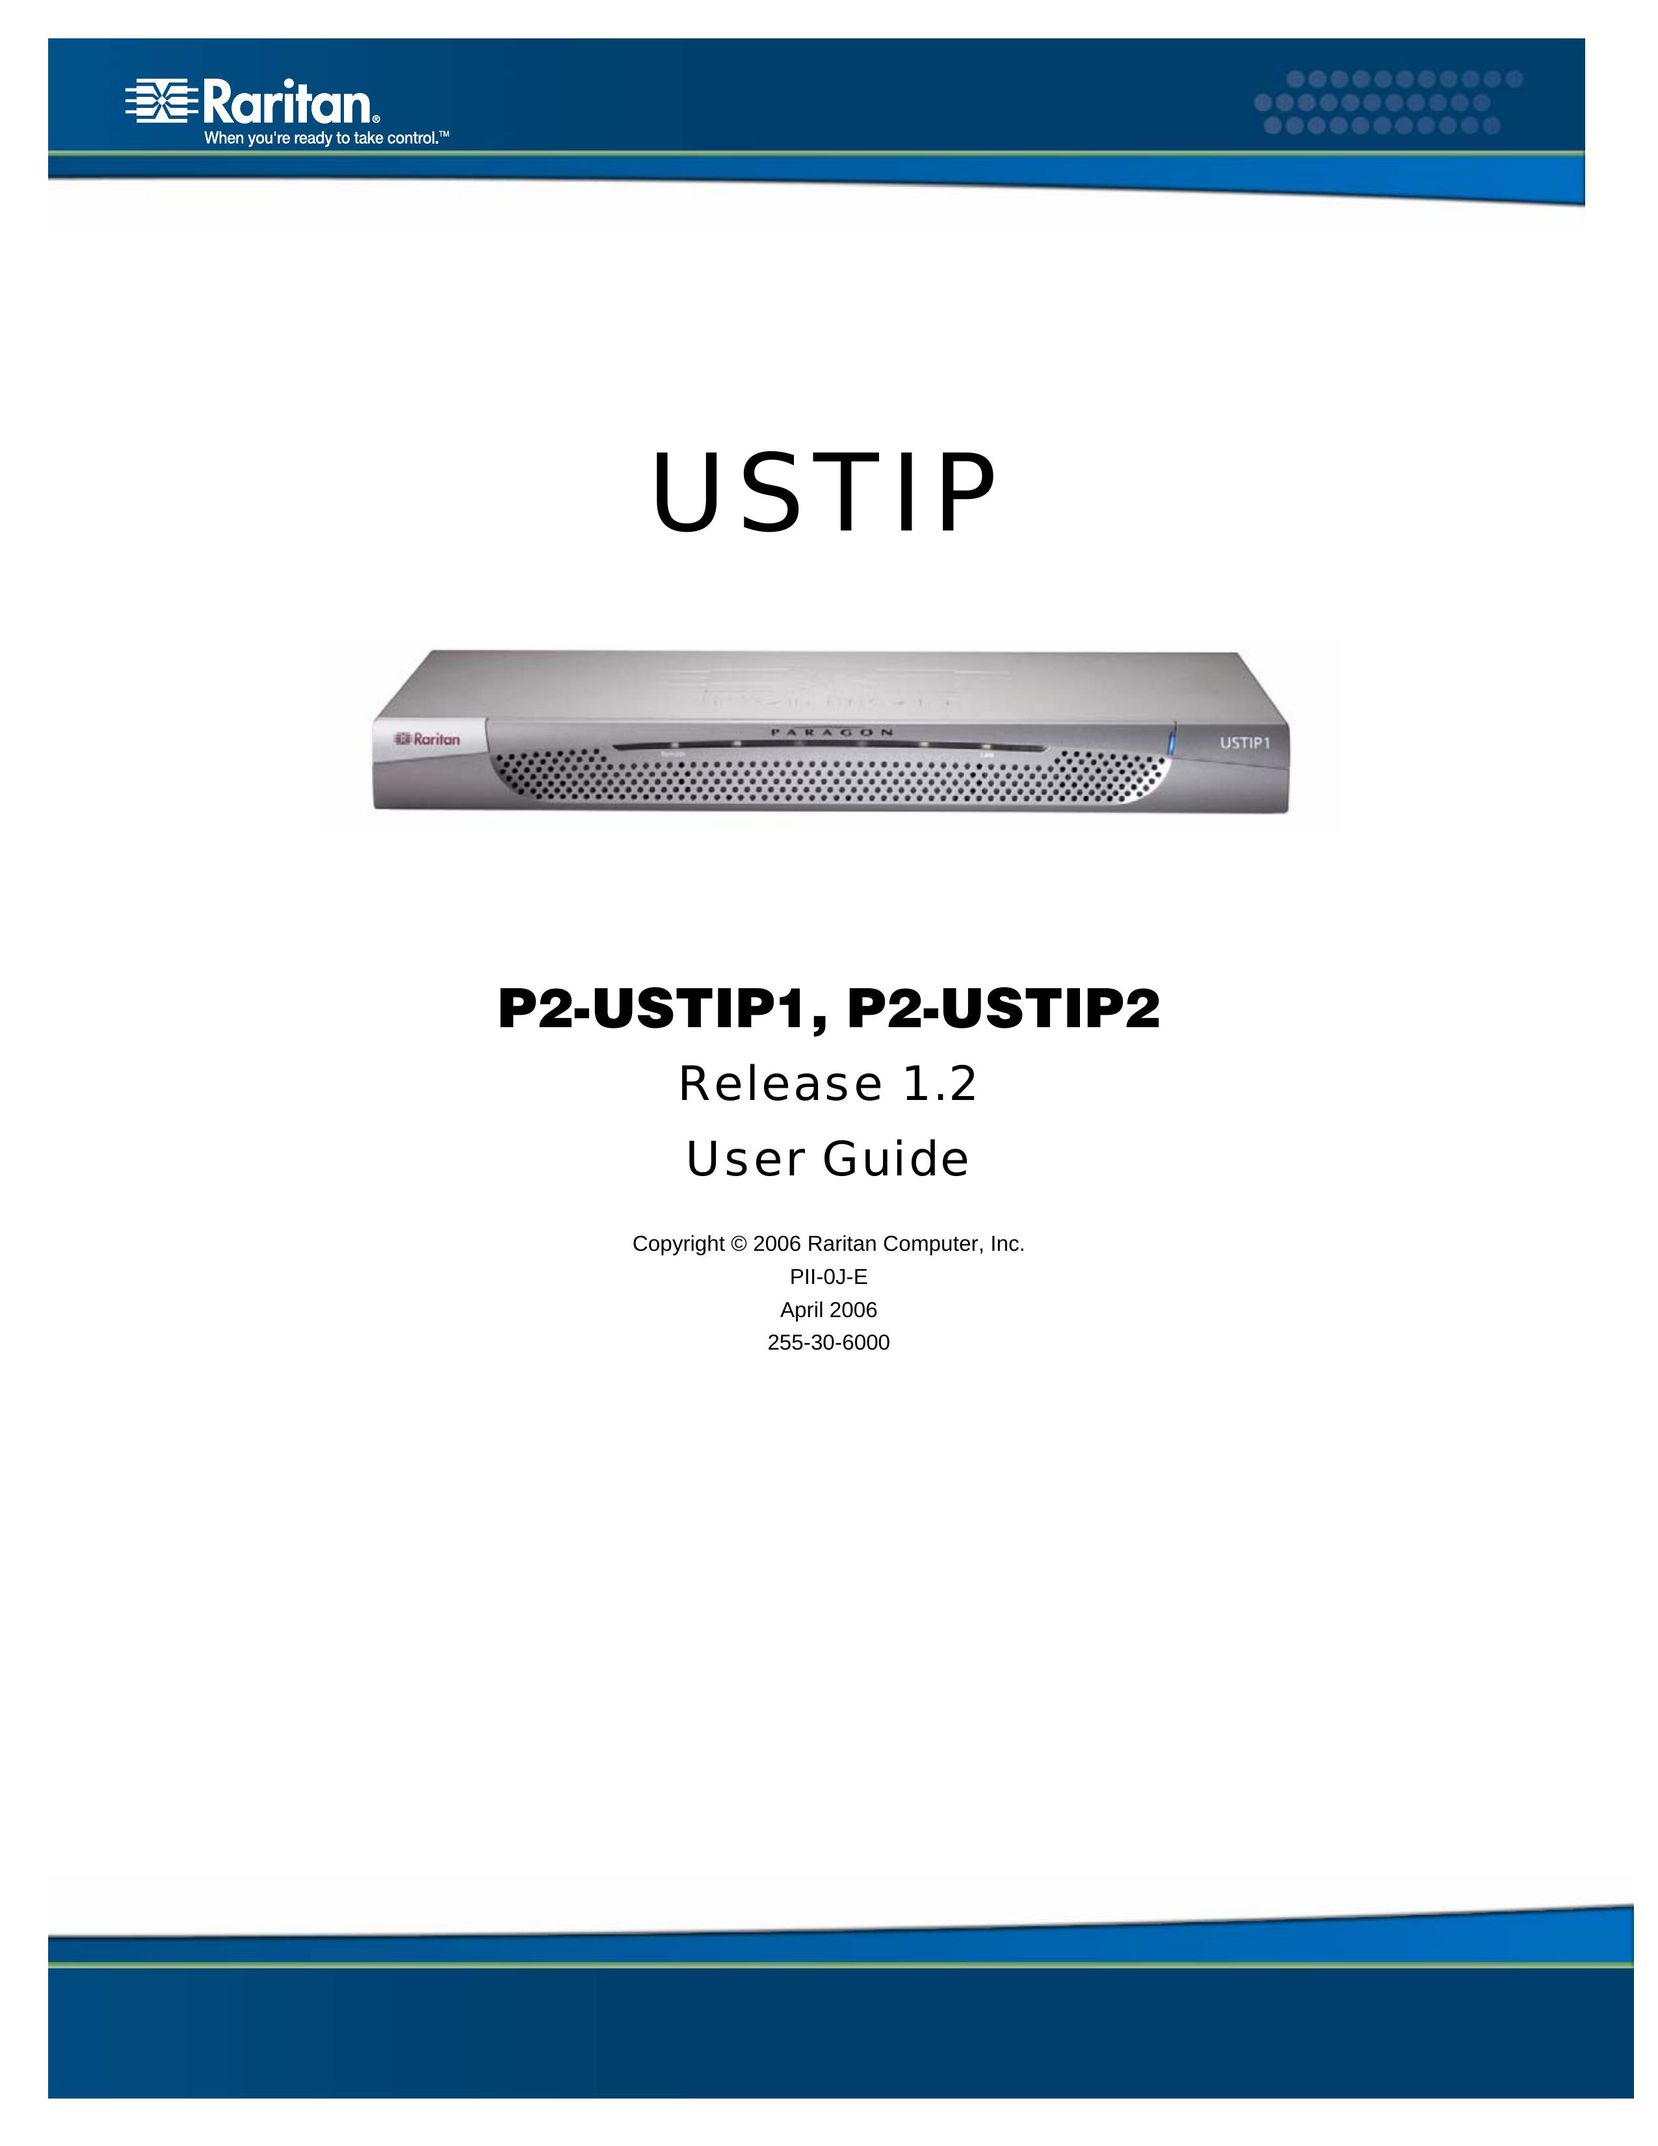 Raritan Computer P2-USTIP2 Network Card User Manual